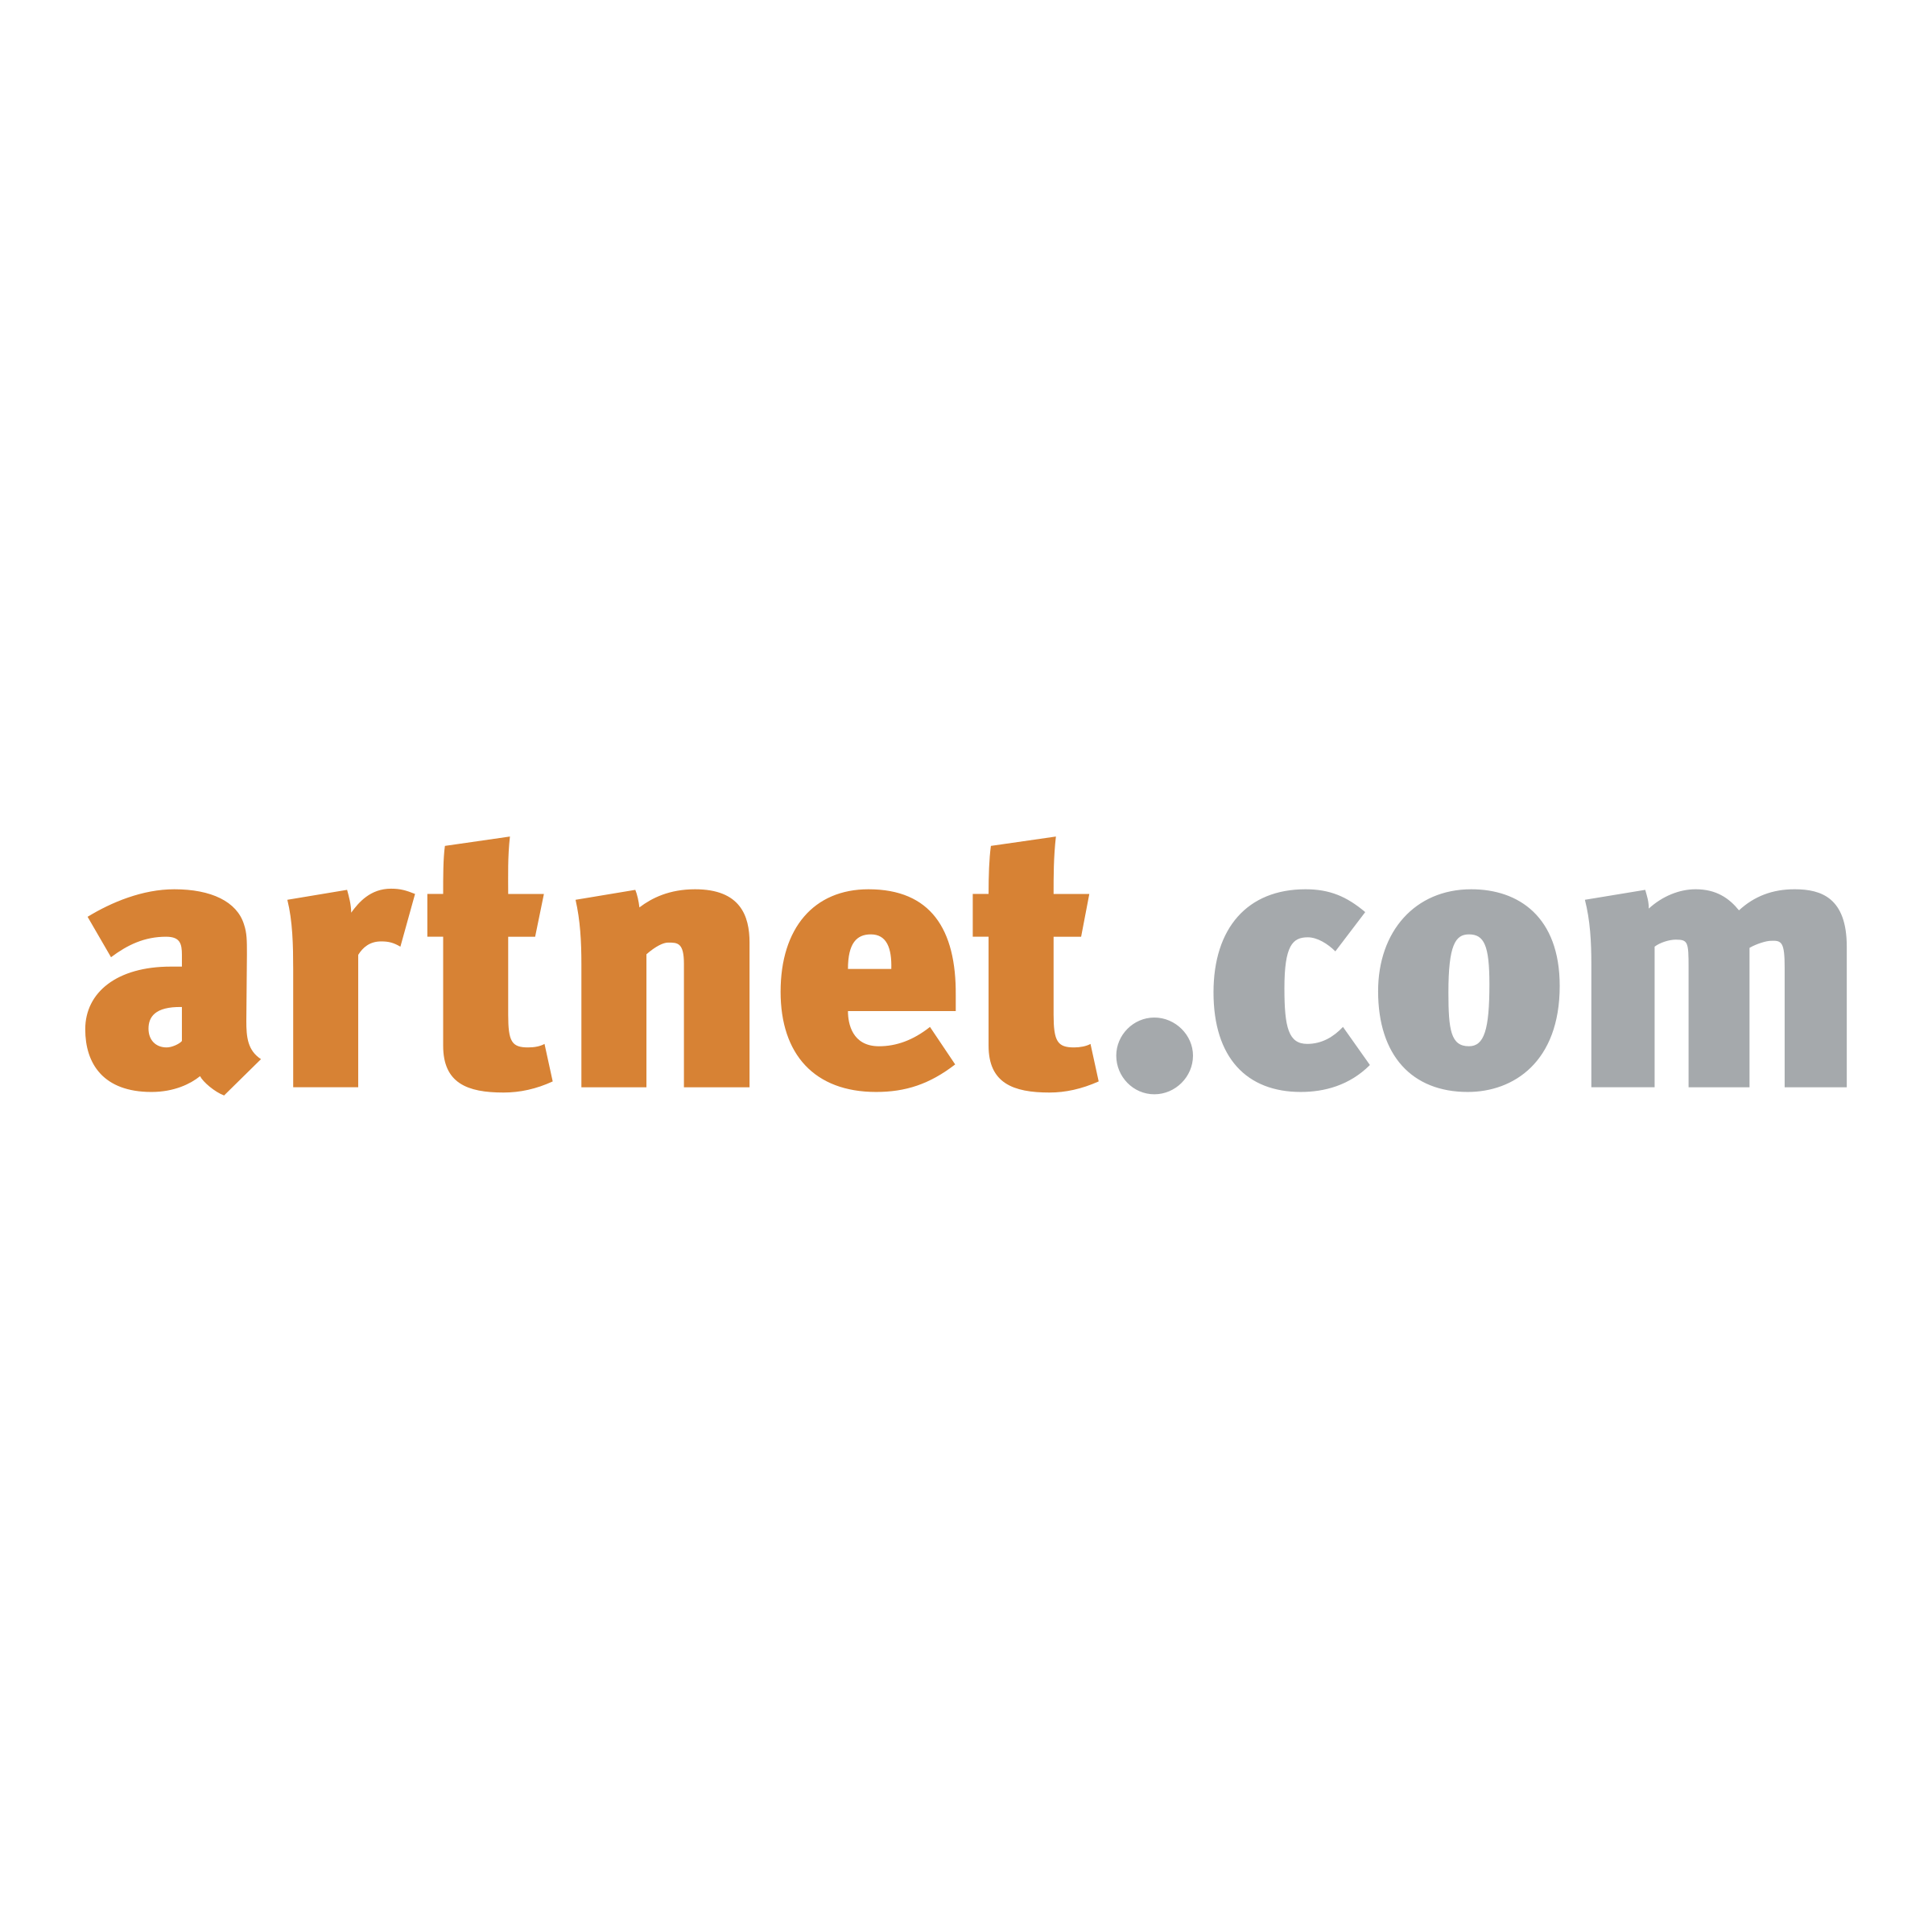 artnet-com-logo-png-transparent.png